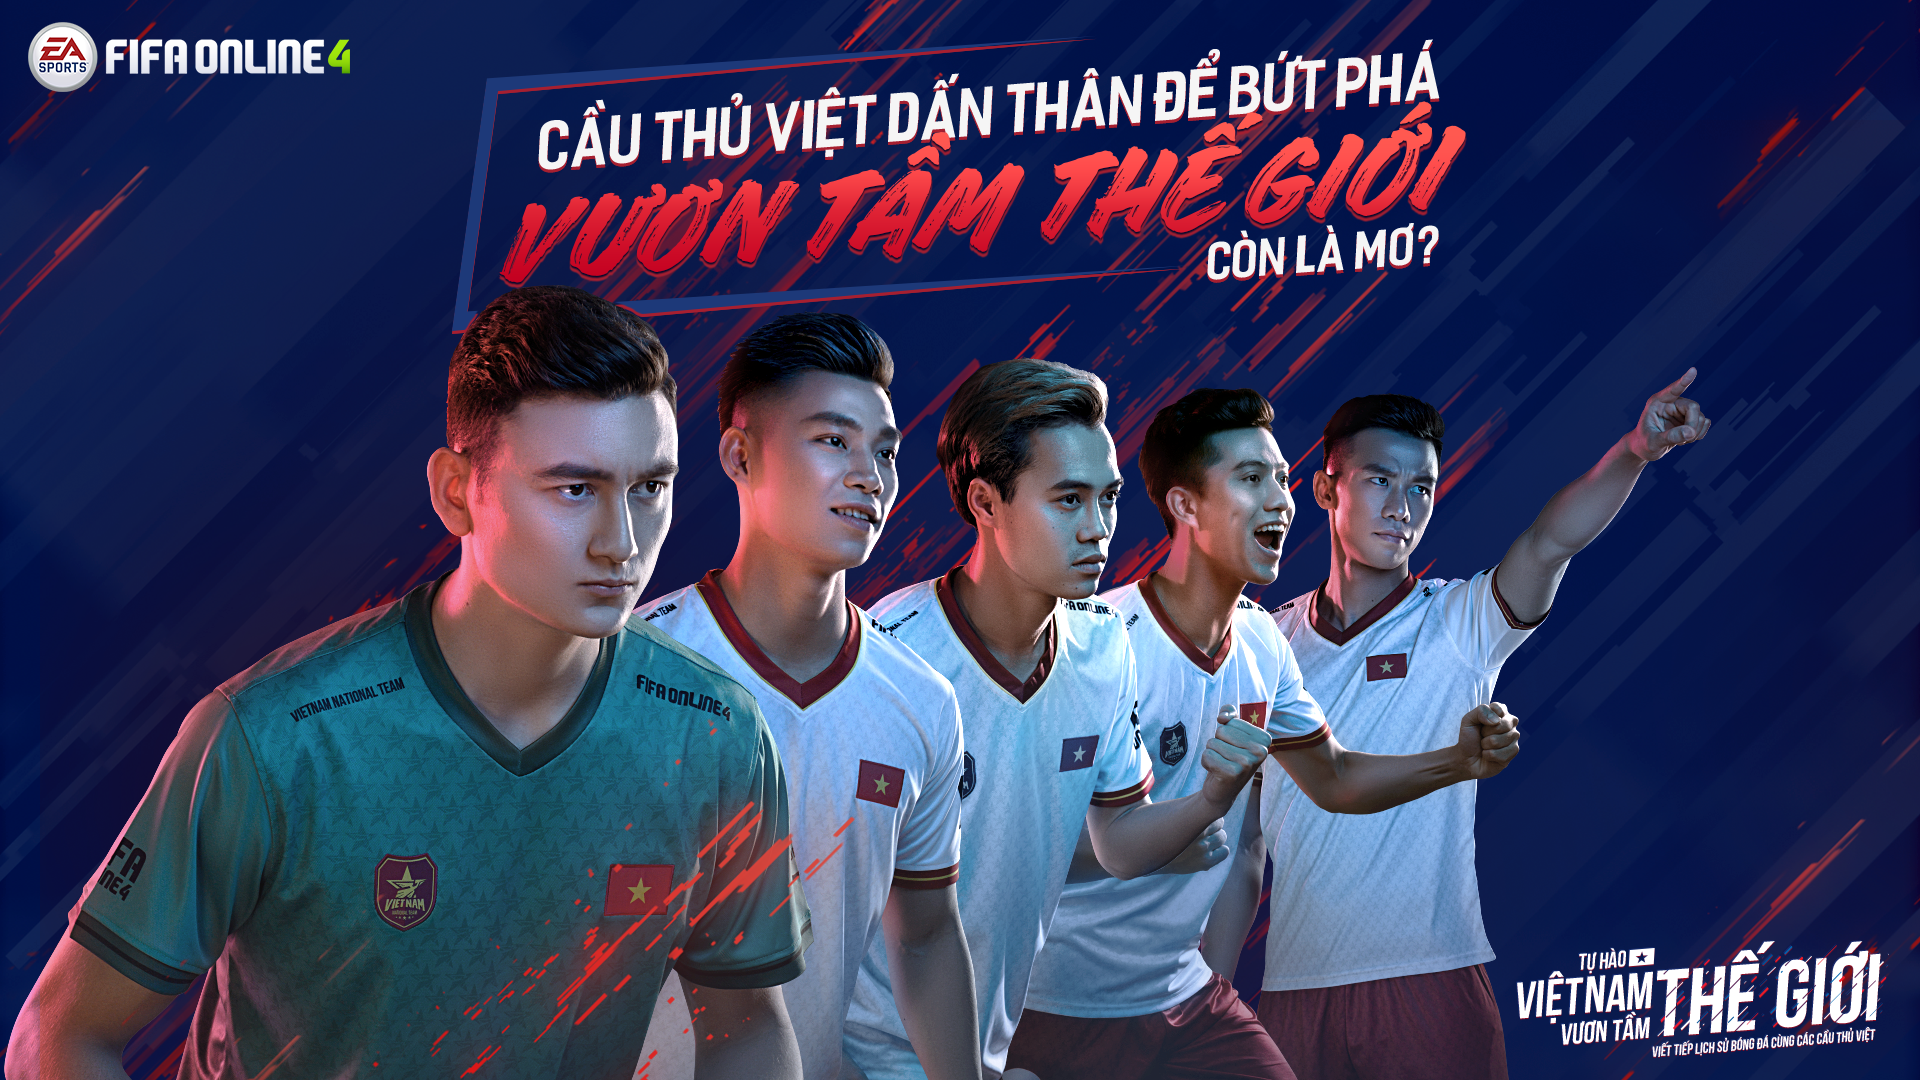 Fifa Online 4 Việt Nam – Fifa Online 4 Ra Mắt Thêm 5 Ngôi Sao Tuyển Việt Nam  Xuất Hiện Trong Dự Án “Tự Hào Việt Nam, Vươn Tầm Thế Giới